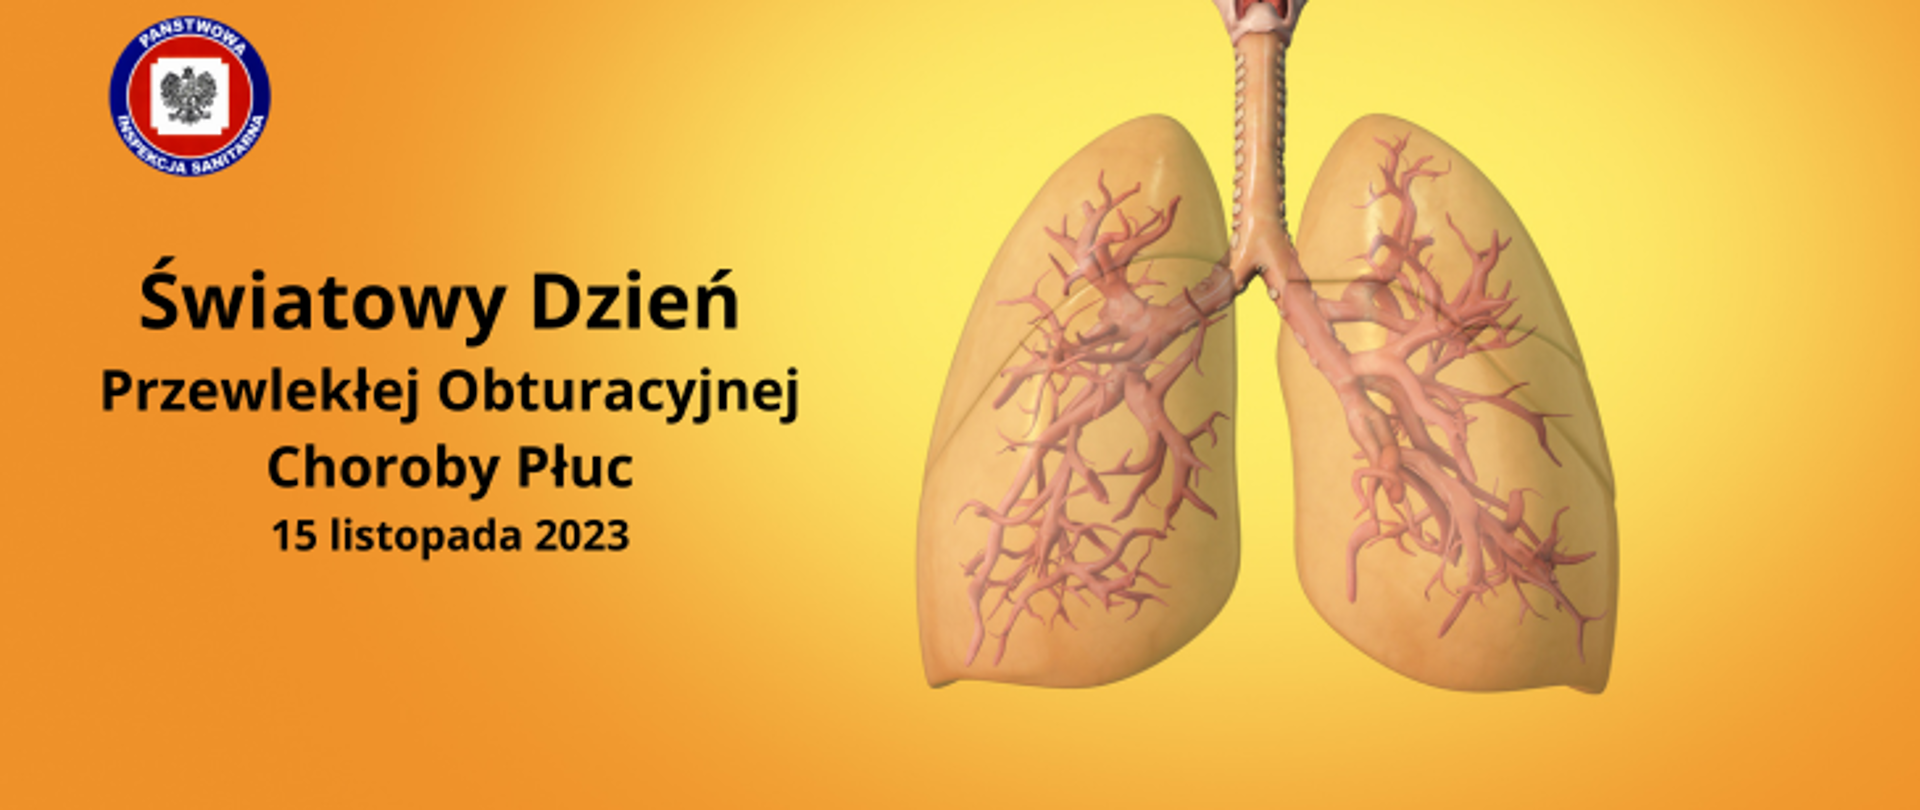 Grafika w pomarańczowym kolorze, z prawej strony rysunek ludzkich płuc, z lewej napis Światowy Dzień Przewlekłej Obstrukcyjnej Choroby Płuc 15 listopada 2023, w lewym górnym rogu logo Państwowej Inspekcji Sanitarnej.